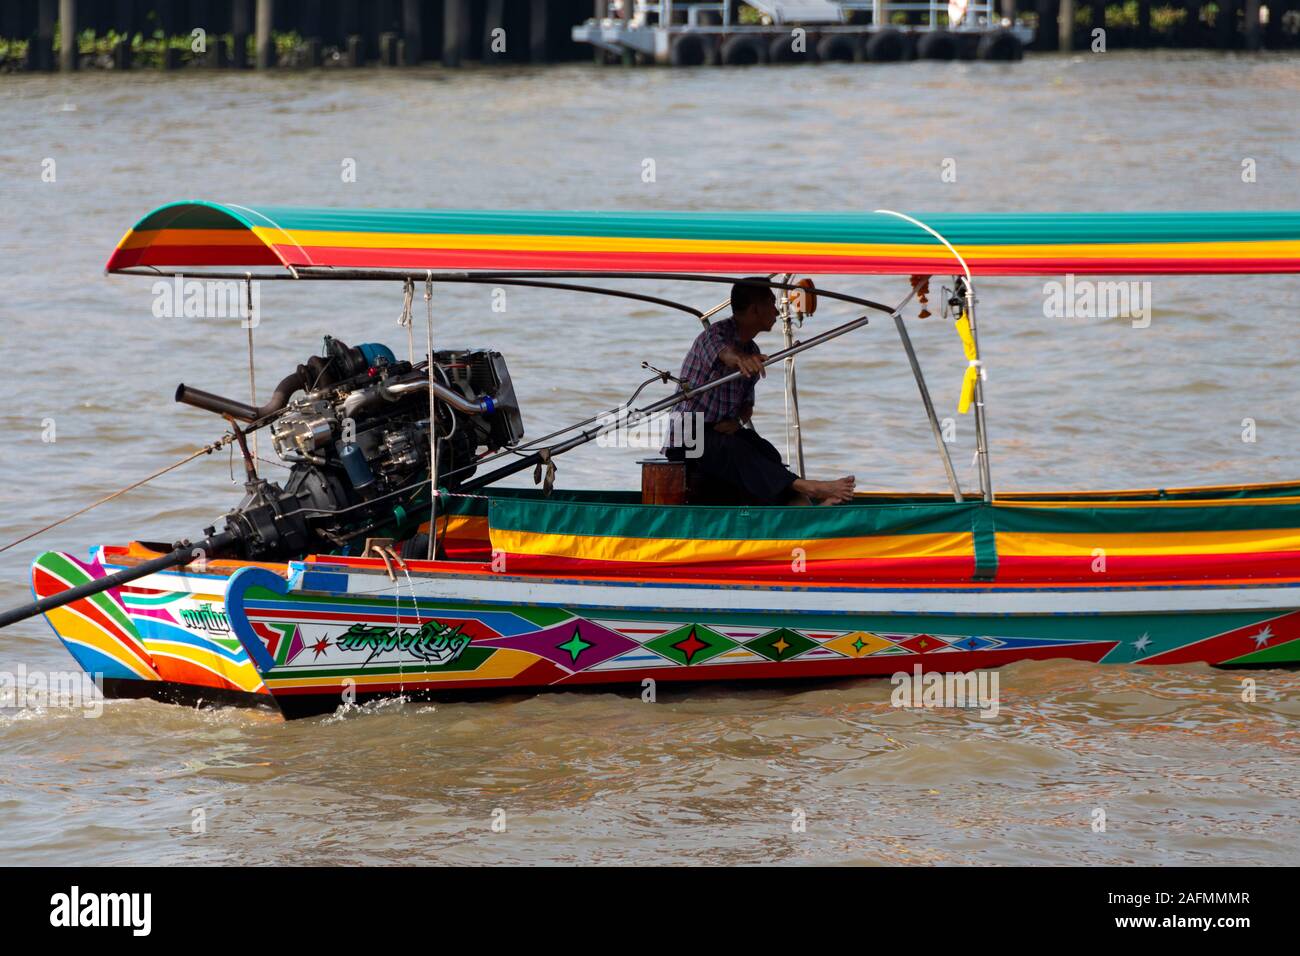 Driver and engine of long-tail boat, Chao Phraya River, Bangkok, Thailand Stock Photo